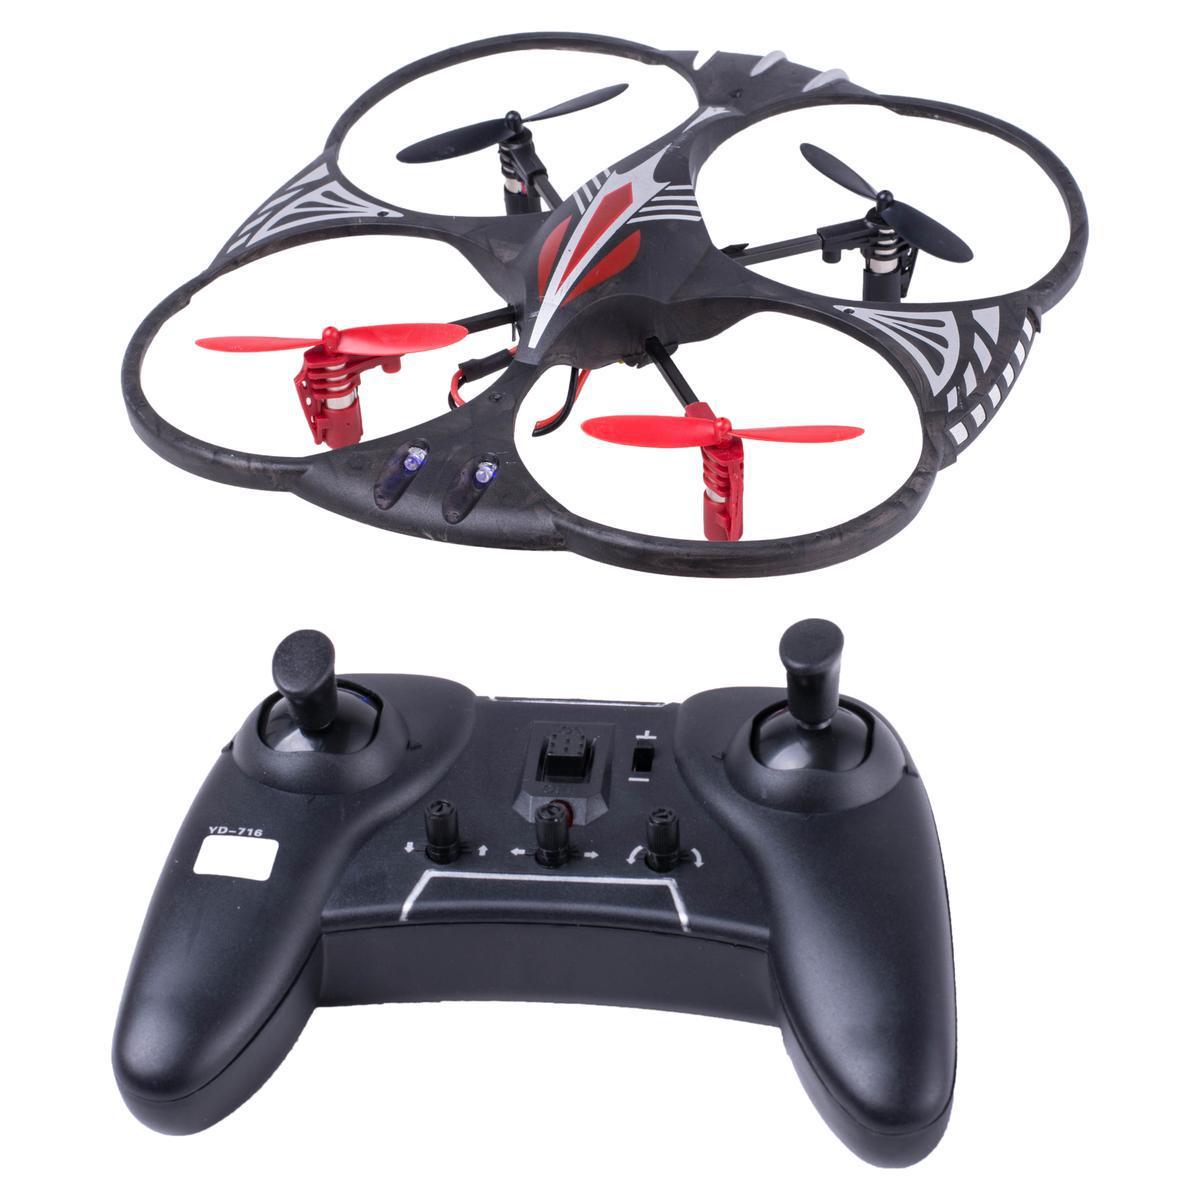 Drone - Plastique - 19,5 x 19,5 x H 4,5 cm - Noir et rouge